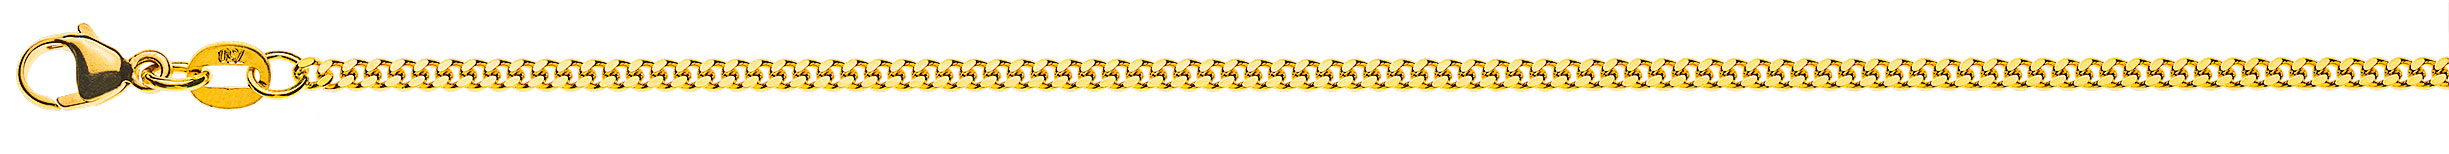 AURONOS Prestige Halskette Gelbgold 18K Panzerkette geschliffen 55cm 2.0mm